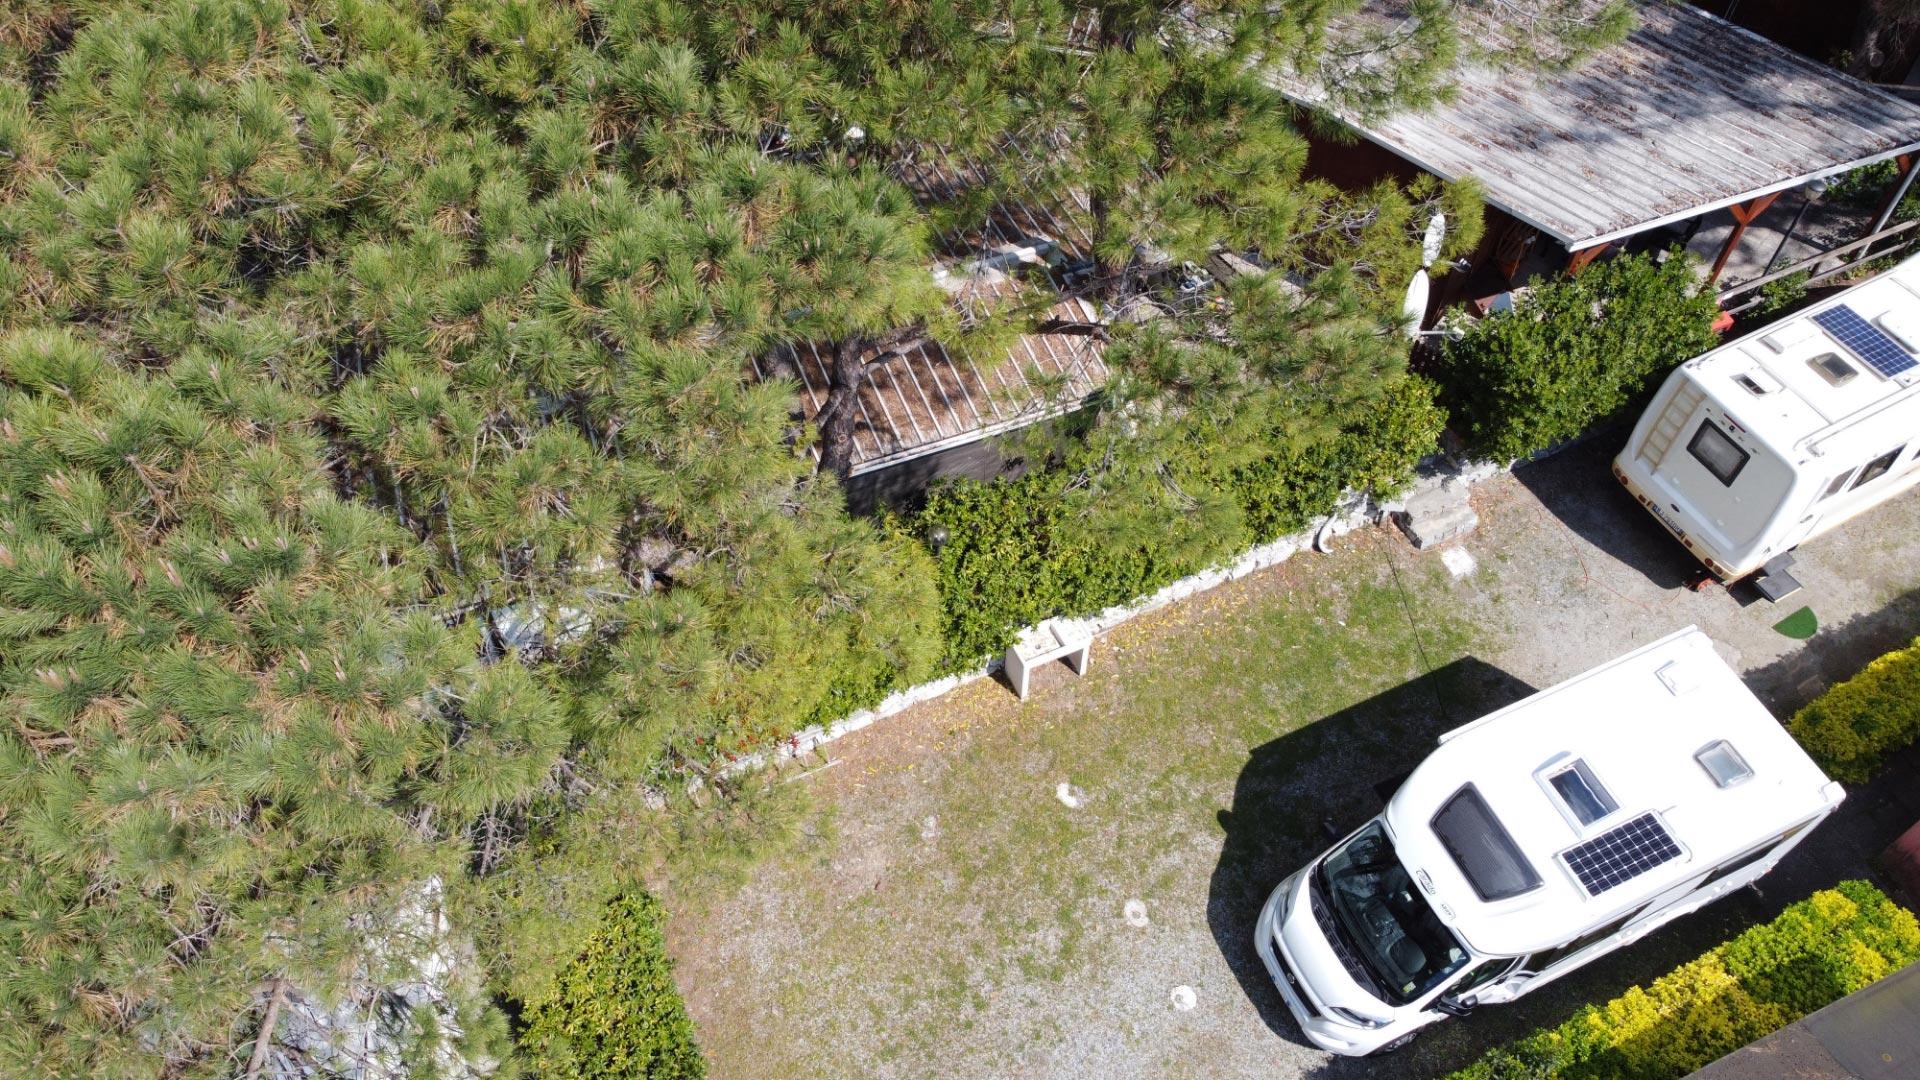 Vue aérienne de camping-cars garés près d'une maison avec des arbres et des buissons.